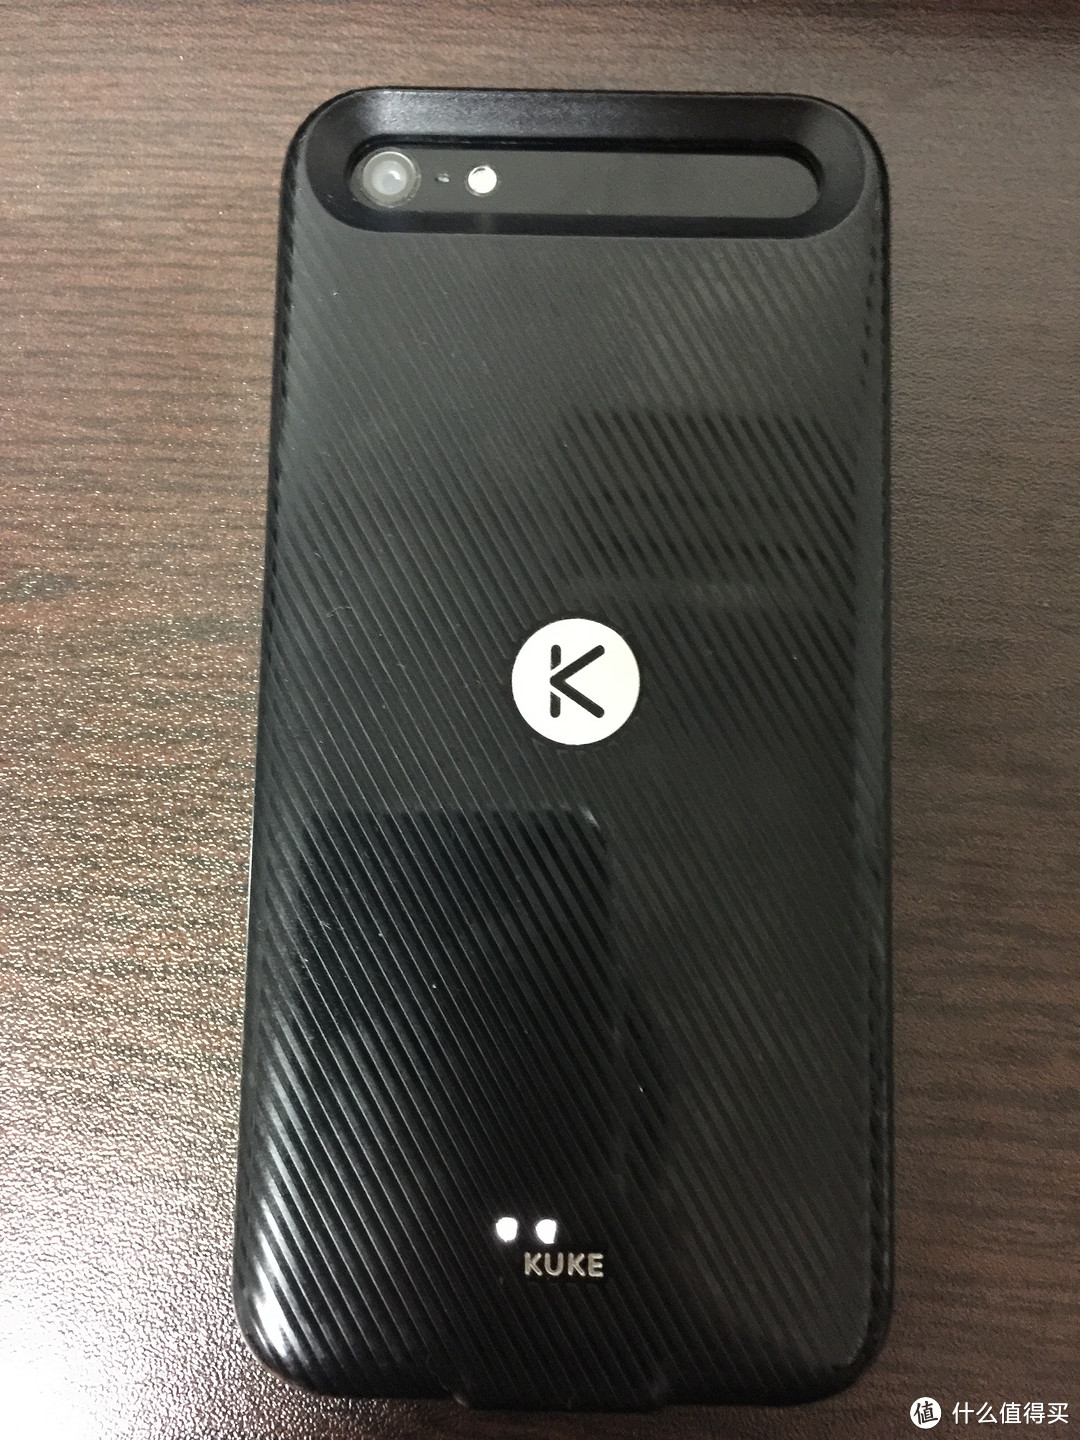 KUKE 酷壳 智能手机壳 充电版 众测报告